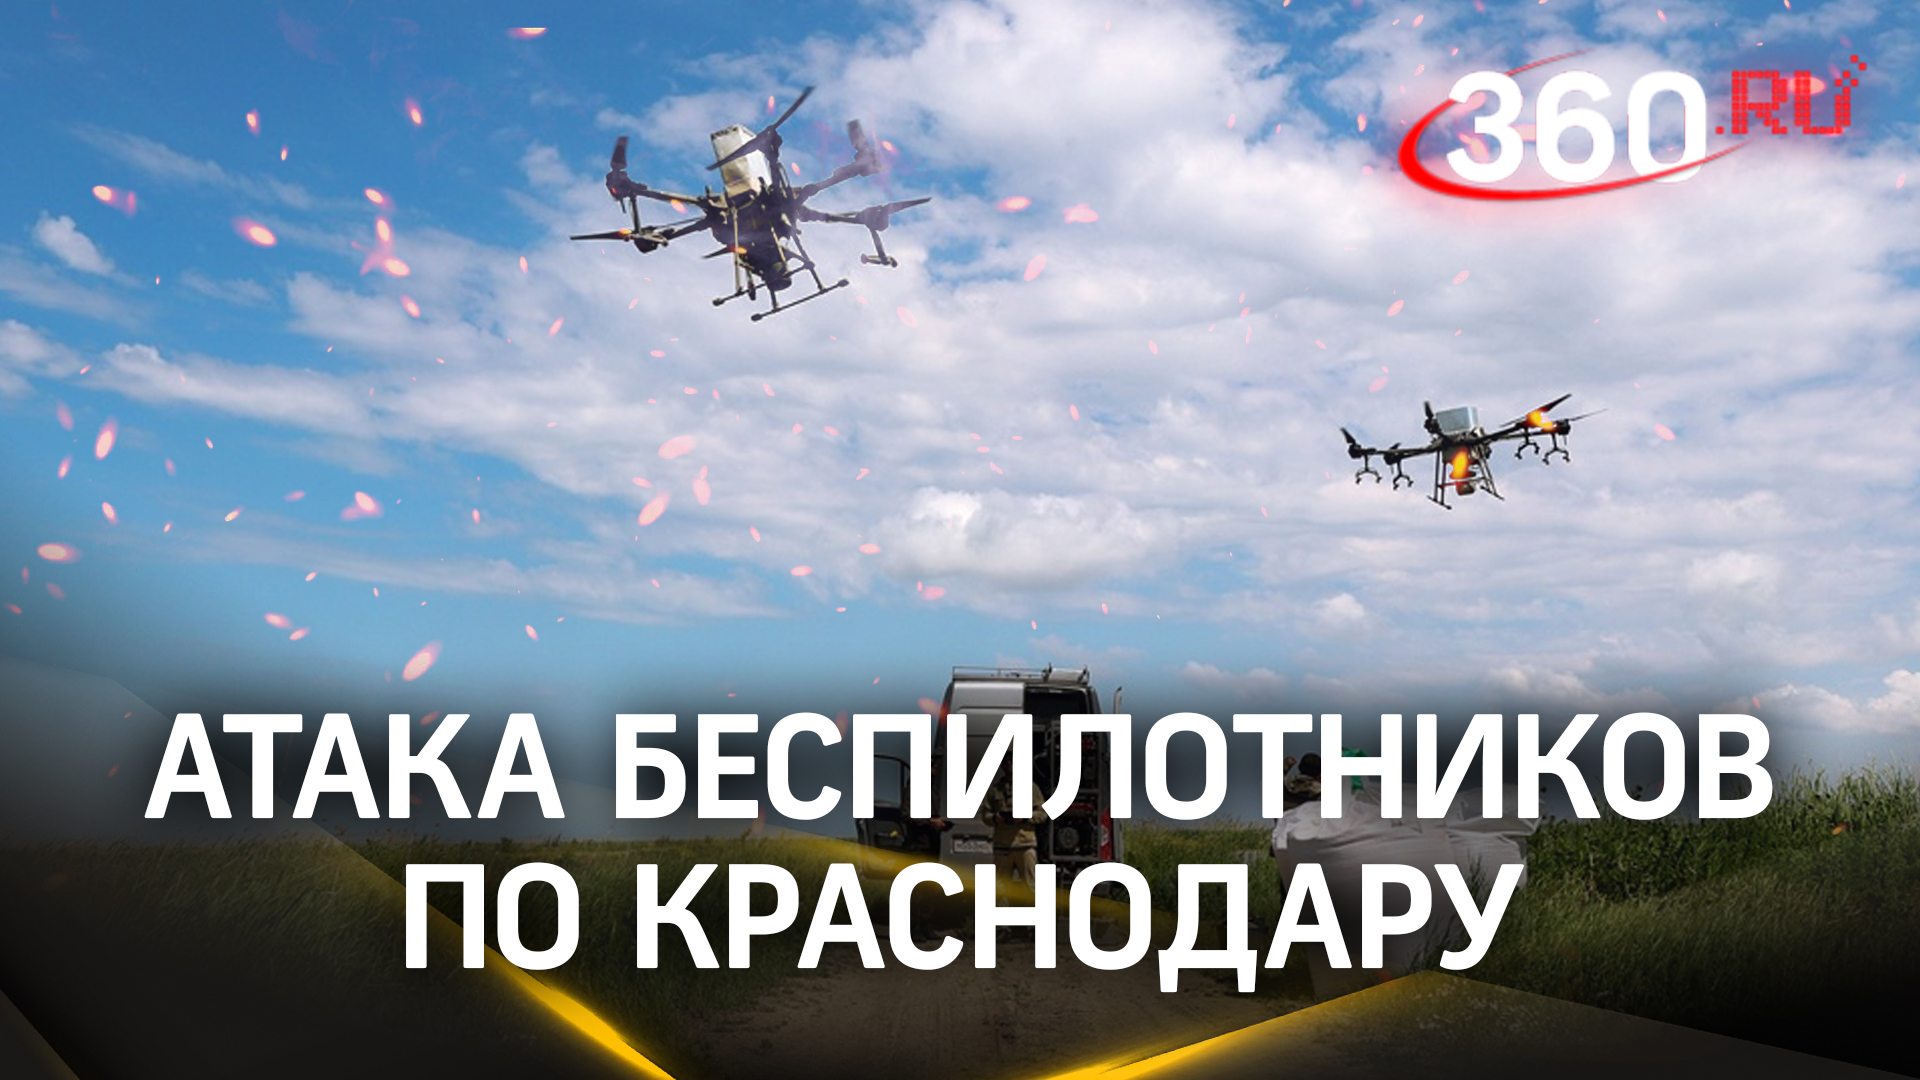 Головорезы из Киева обрушили рой дронов на Краснодарский край